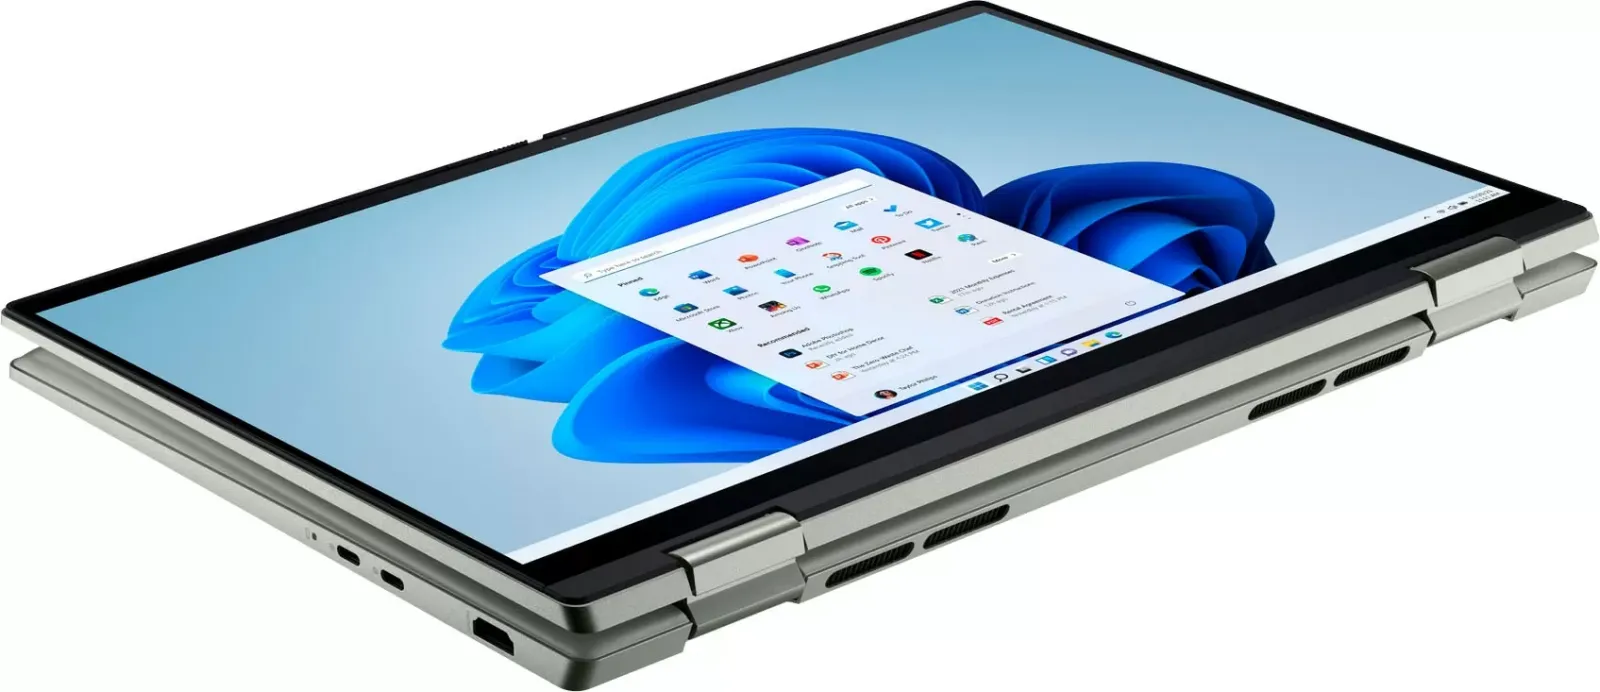 Ноутбук Dell Inspiron 7425 (I7425-A242PBL-PUS) CUSTOM ціна